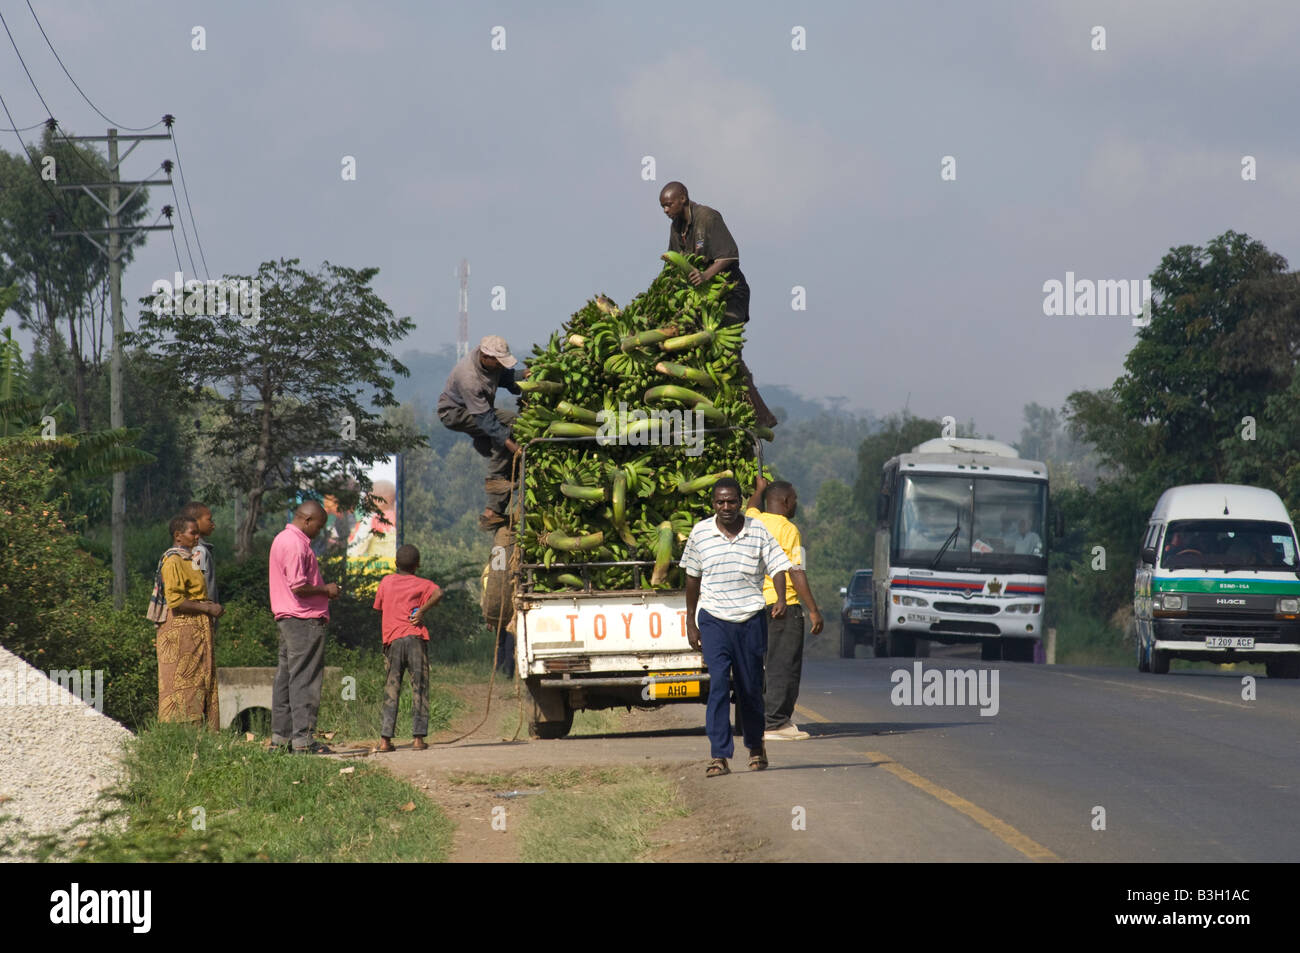 La cottura di banane caricato su un pickup, Arusha, Tanzania Foto Stock